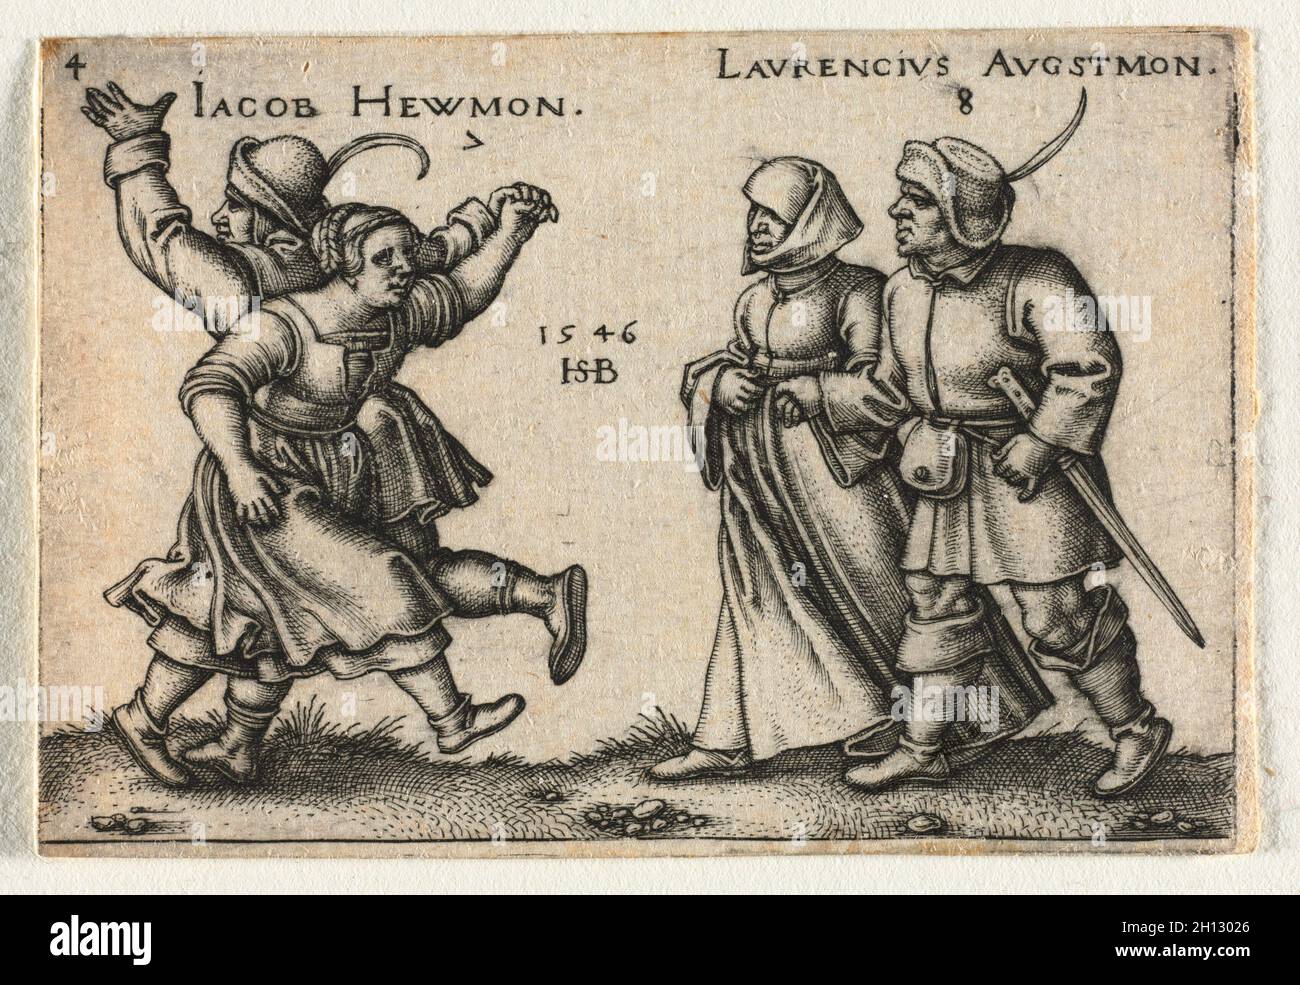 La boda del campesino o los doce meses: 7 Jacob Hewmon 8-Laurencius Augstmon, 1546. Hans Sebald Beham (alemán, 1500-1550). Grabado; Foto de stock